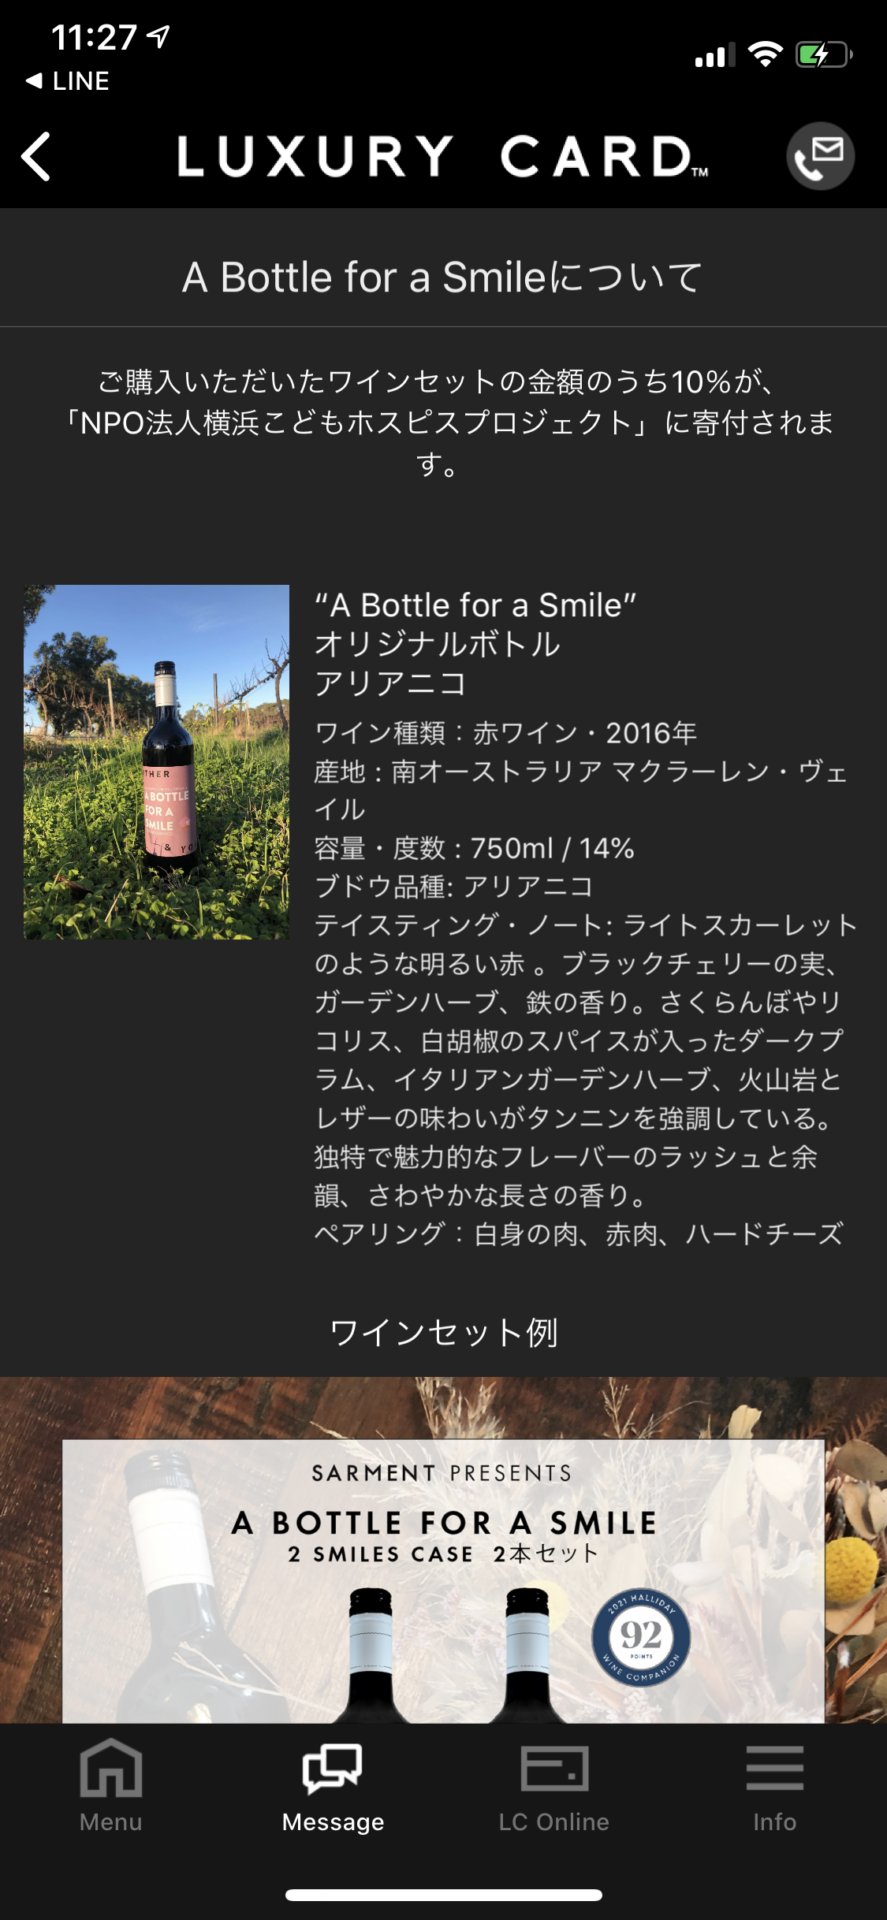 ワイン購入でNPO法人横浜こどもホスピスプロジェクトに寄付 （ラグジュアリーカード） (1)